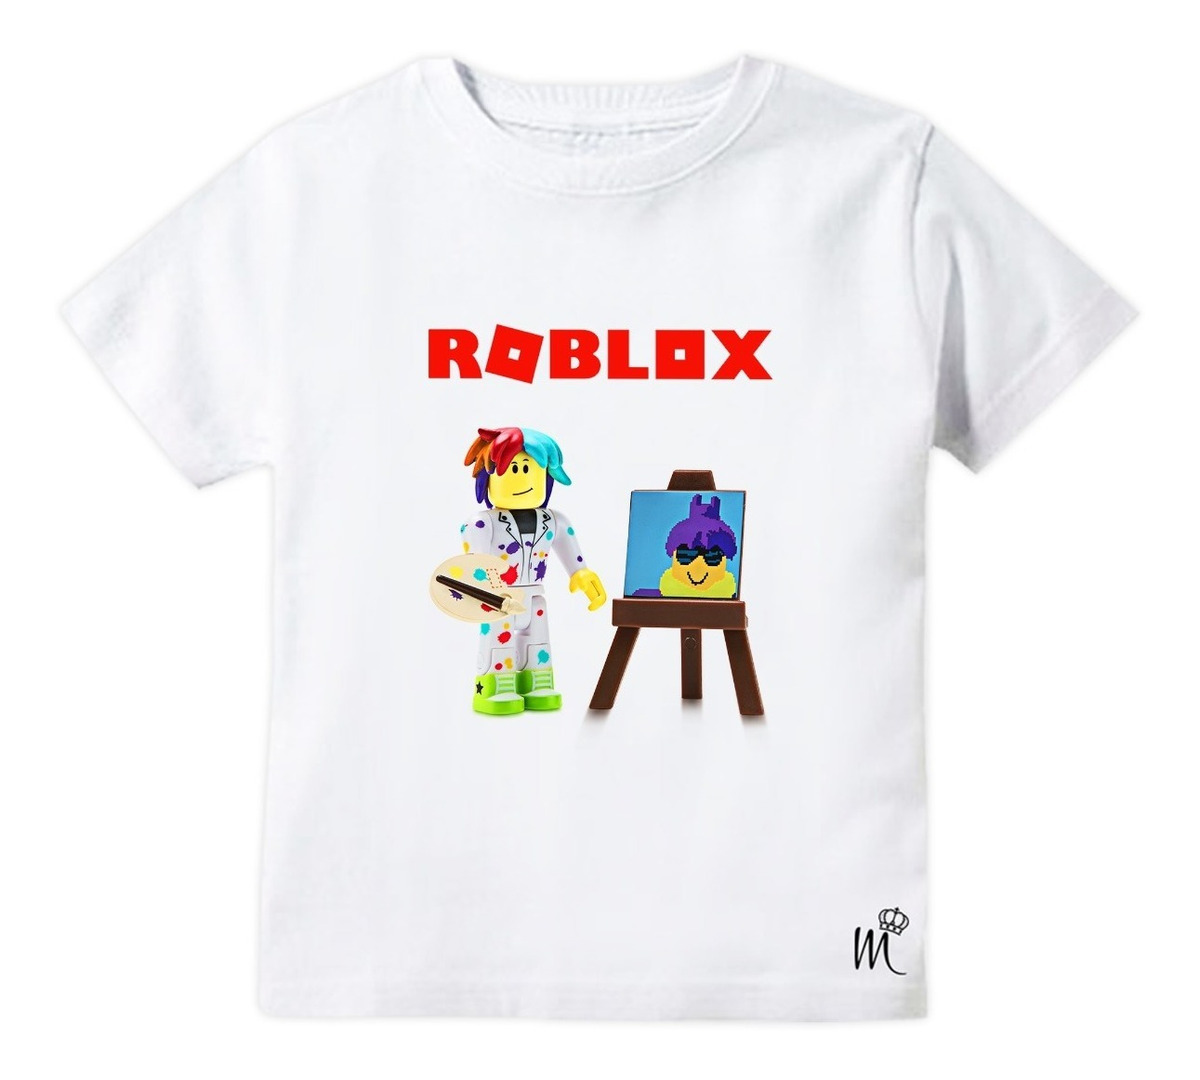 Camiseta Infantil Pintor Roblox R 29 90 Em Mercado Livre - camisa branca roblox